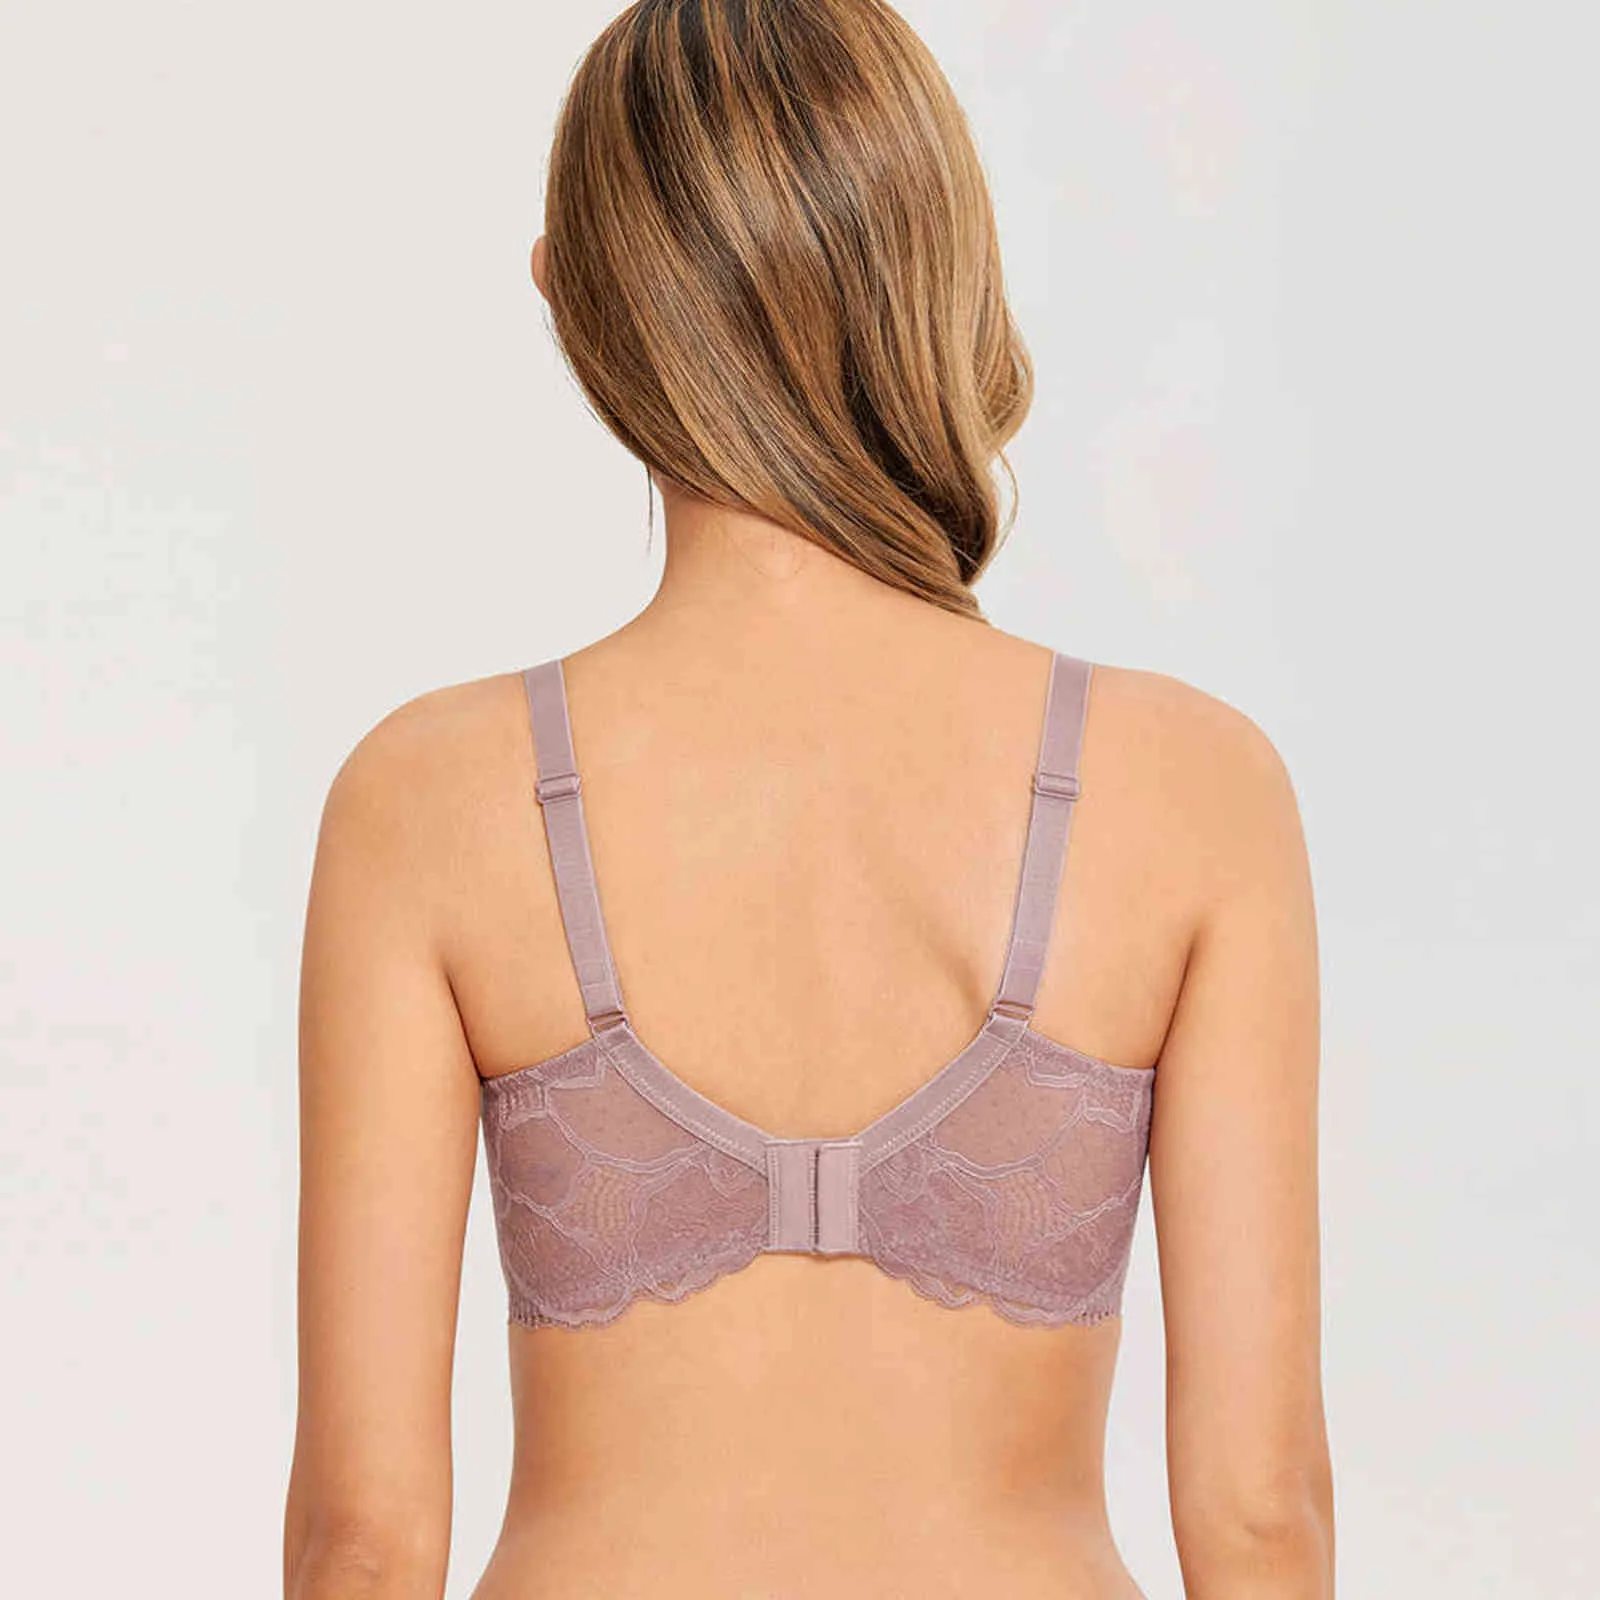 DOBREVA Women's Minimizer Underwire Bra Lace Unlined Plus Size Full  Coverage